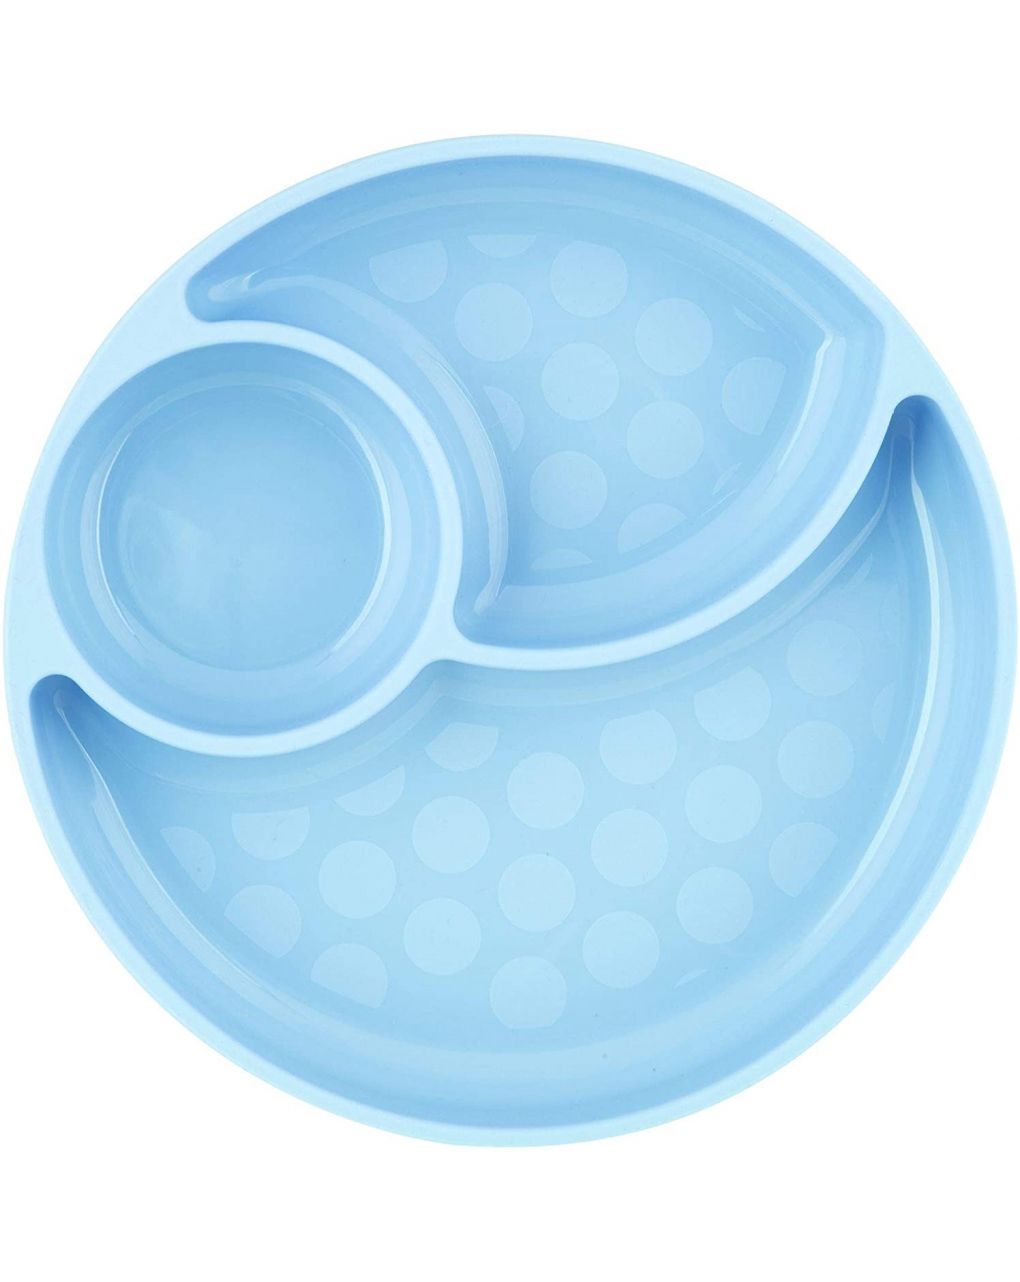 Placa de silicone com compartimentos com ventosa 12 meses + azul claro - Chicco